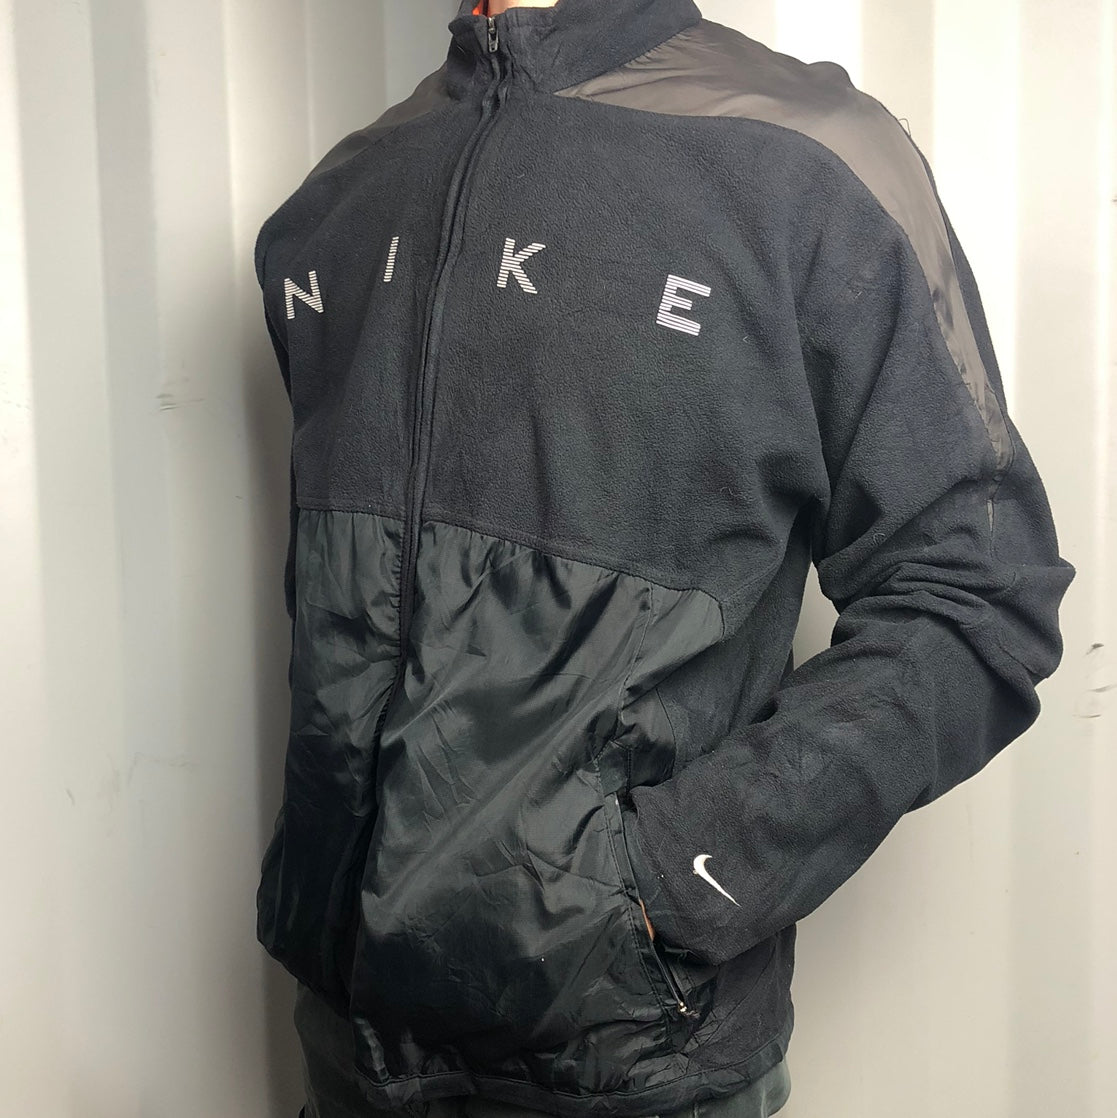 Vintage Nike Spellout Jacket - Medium